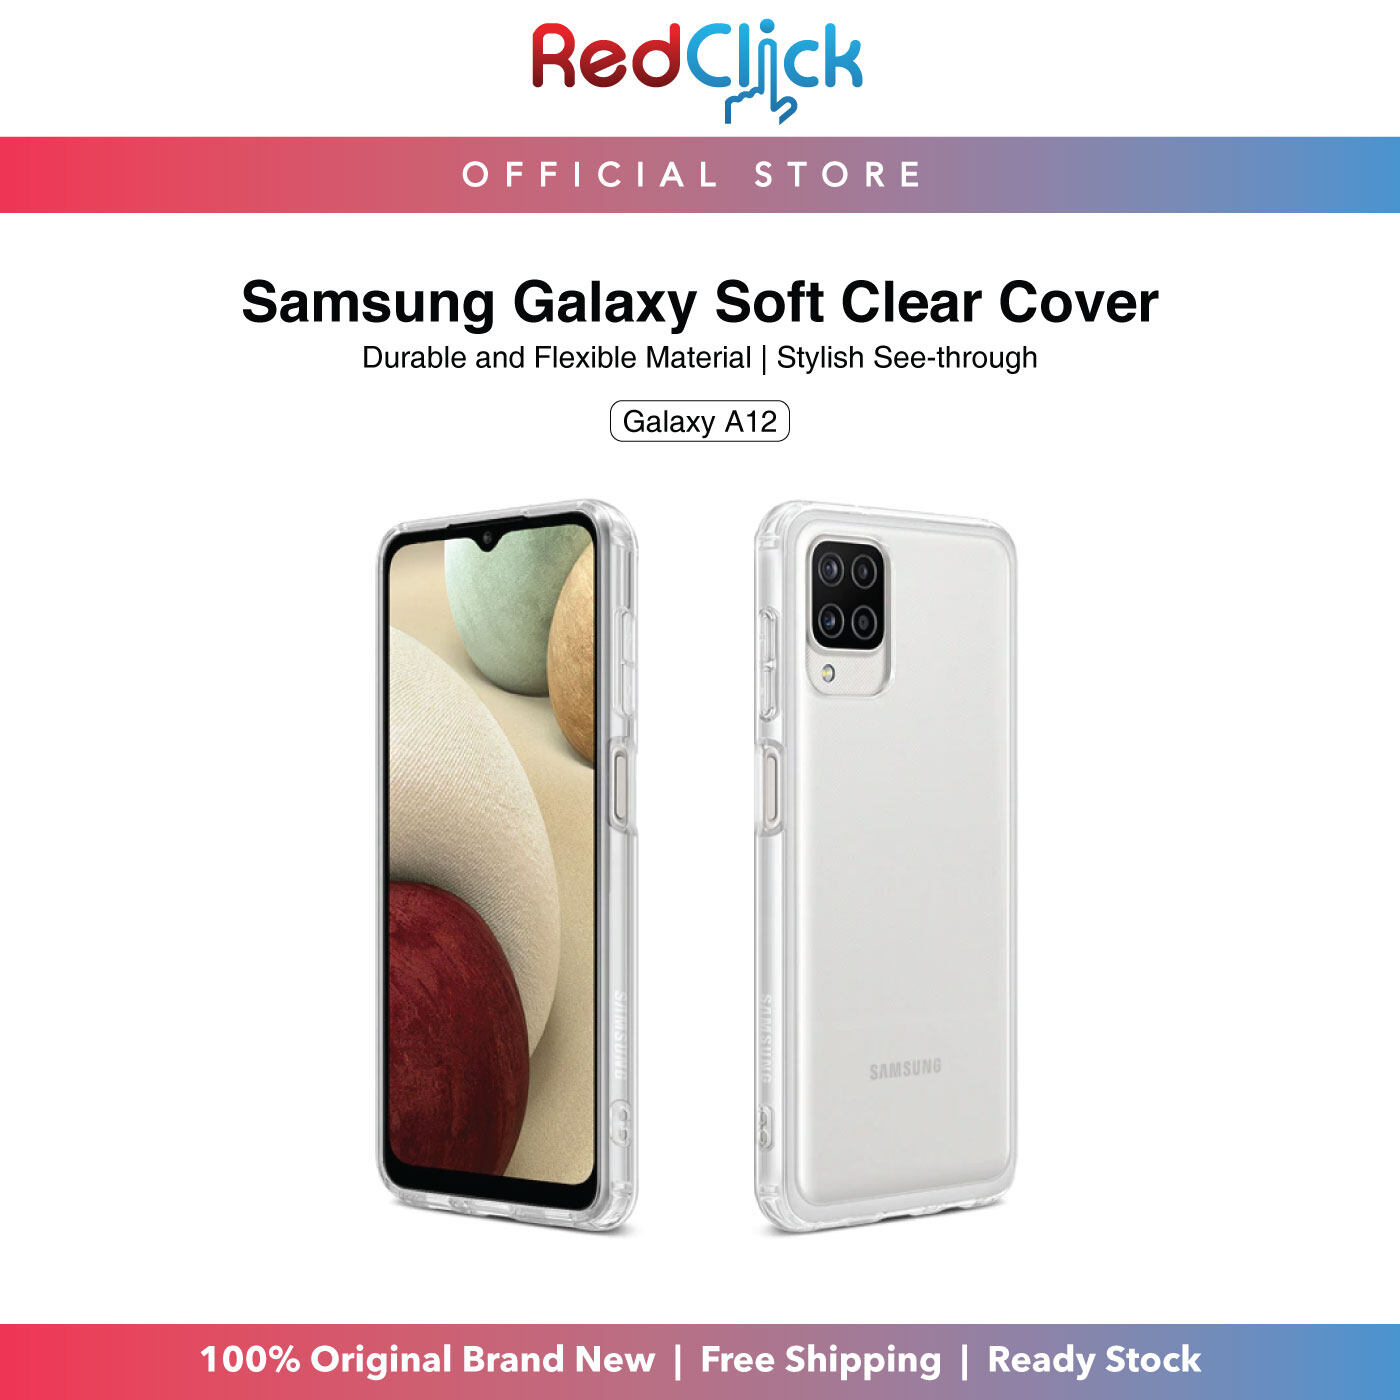 Samsung Galaxy Soft Clear Cover Galaxy A12